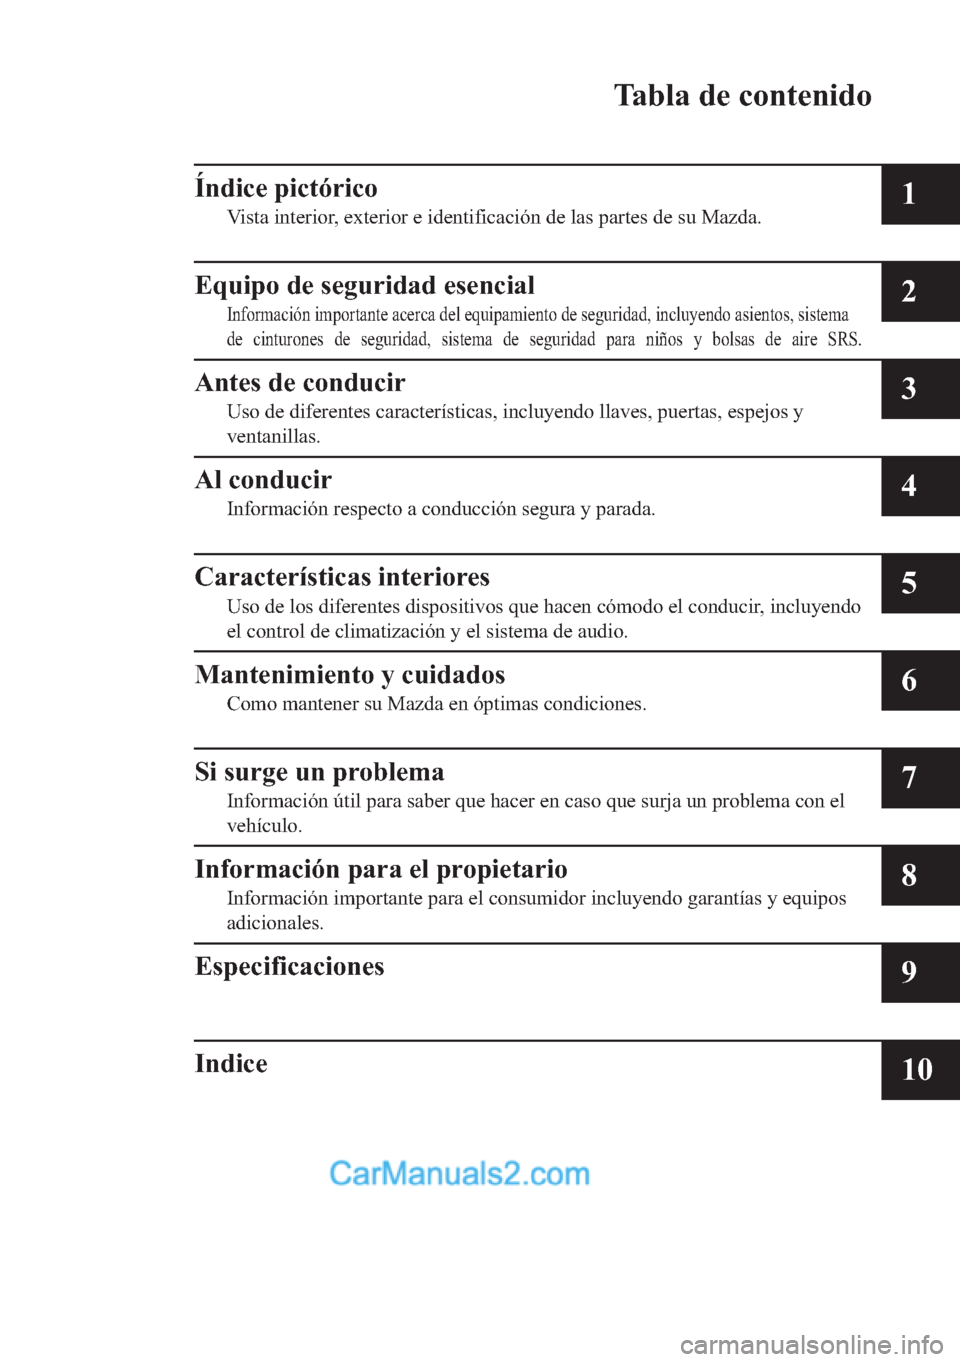 MAZDA MODEL MX-5 2017  Manual del propietario (in Spanish)  �7�D�E�O�D��G�H��F�R�Q�W�H�Q�L�G�R
�Ë�Q�G�L�F�H��S�L�F�W�y�U�L�F�R
�9�L�V�W�D��L�Q�W�H�U�L�R�U���H�[�W�H�U�L�R�U��H��L�G�H�Q�W�L�I�L�F�D�F�L�y�Q��G�H��O�D�V��S�D�U�W�H�V��G�H��V�X��0�D�